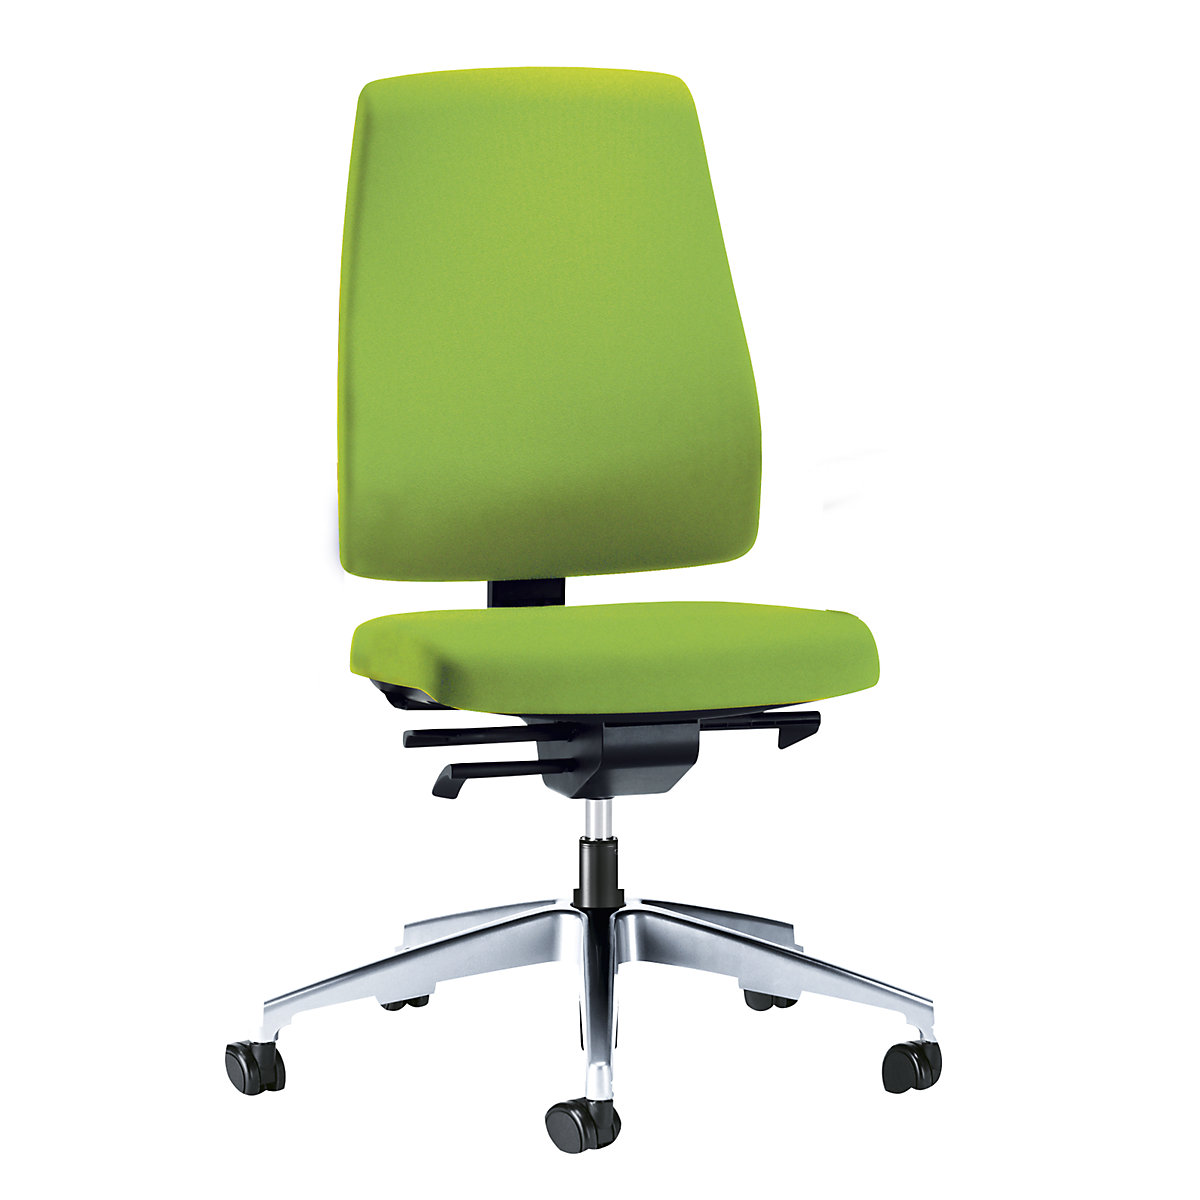 Bürodrehstuhl GOAL, Rückenlehnenhöhe 530 mm interstuhl, Gestell poliert, mit weichen Rollen, gelbgrün, Sitztiefe 410 mm